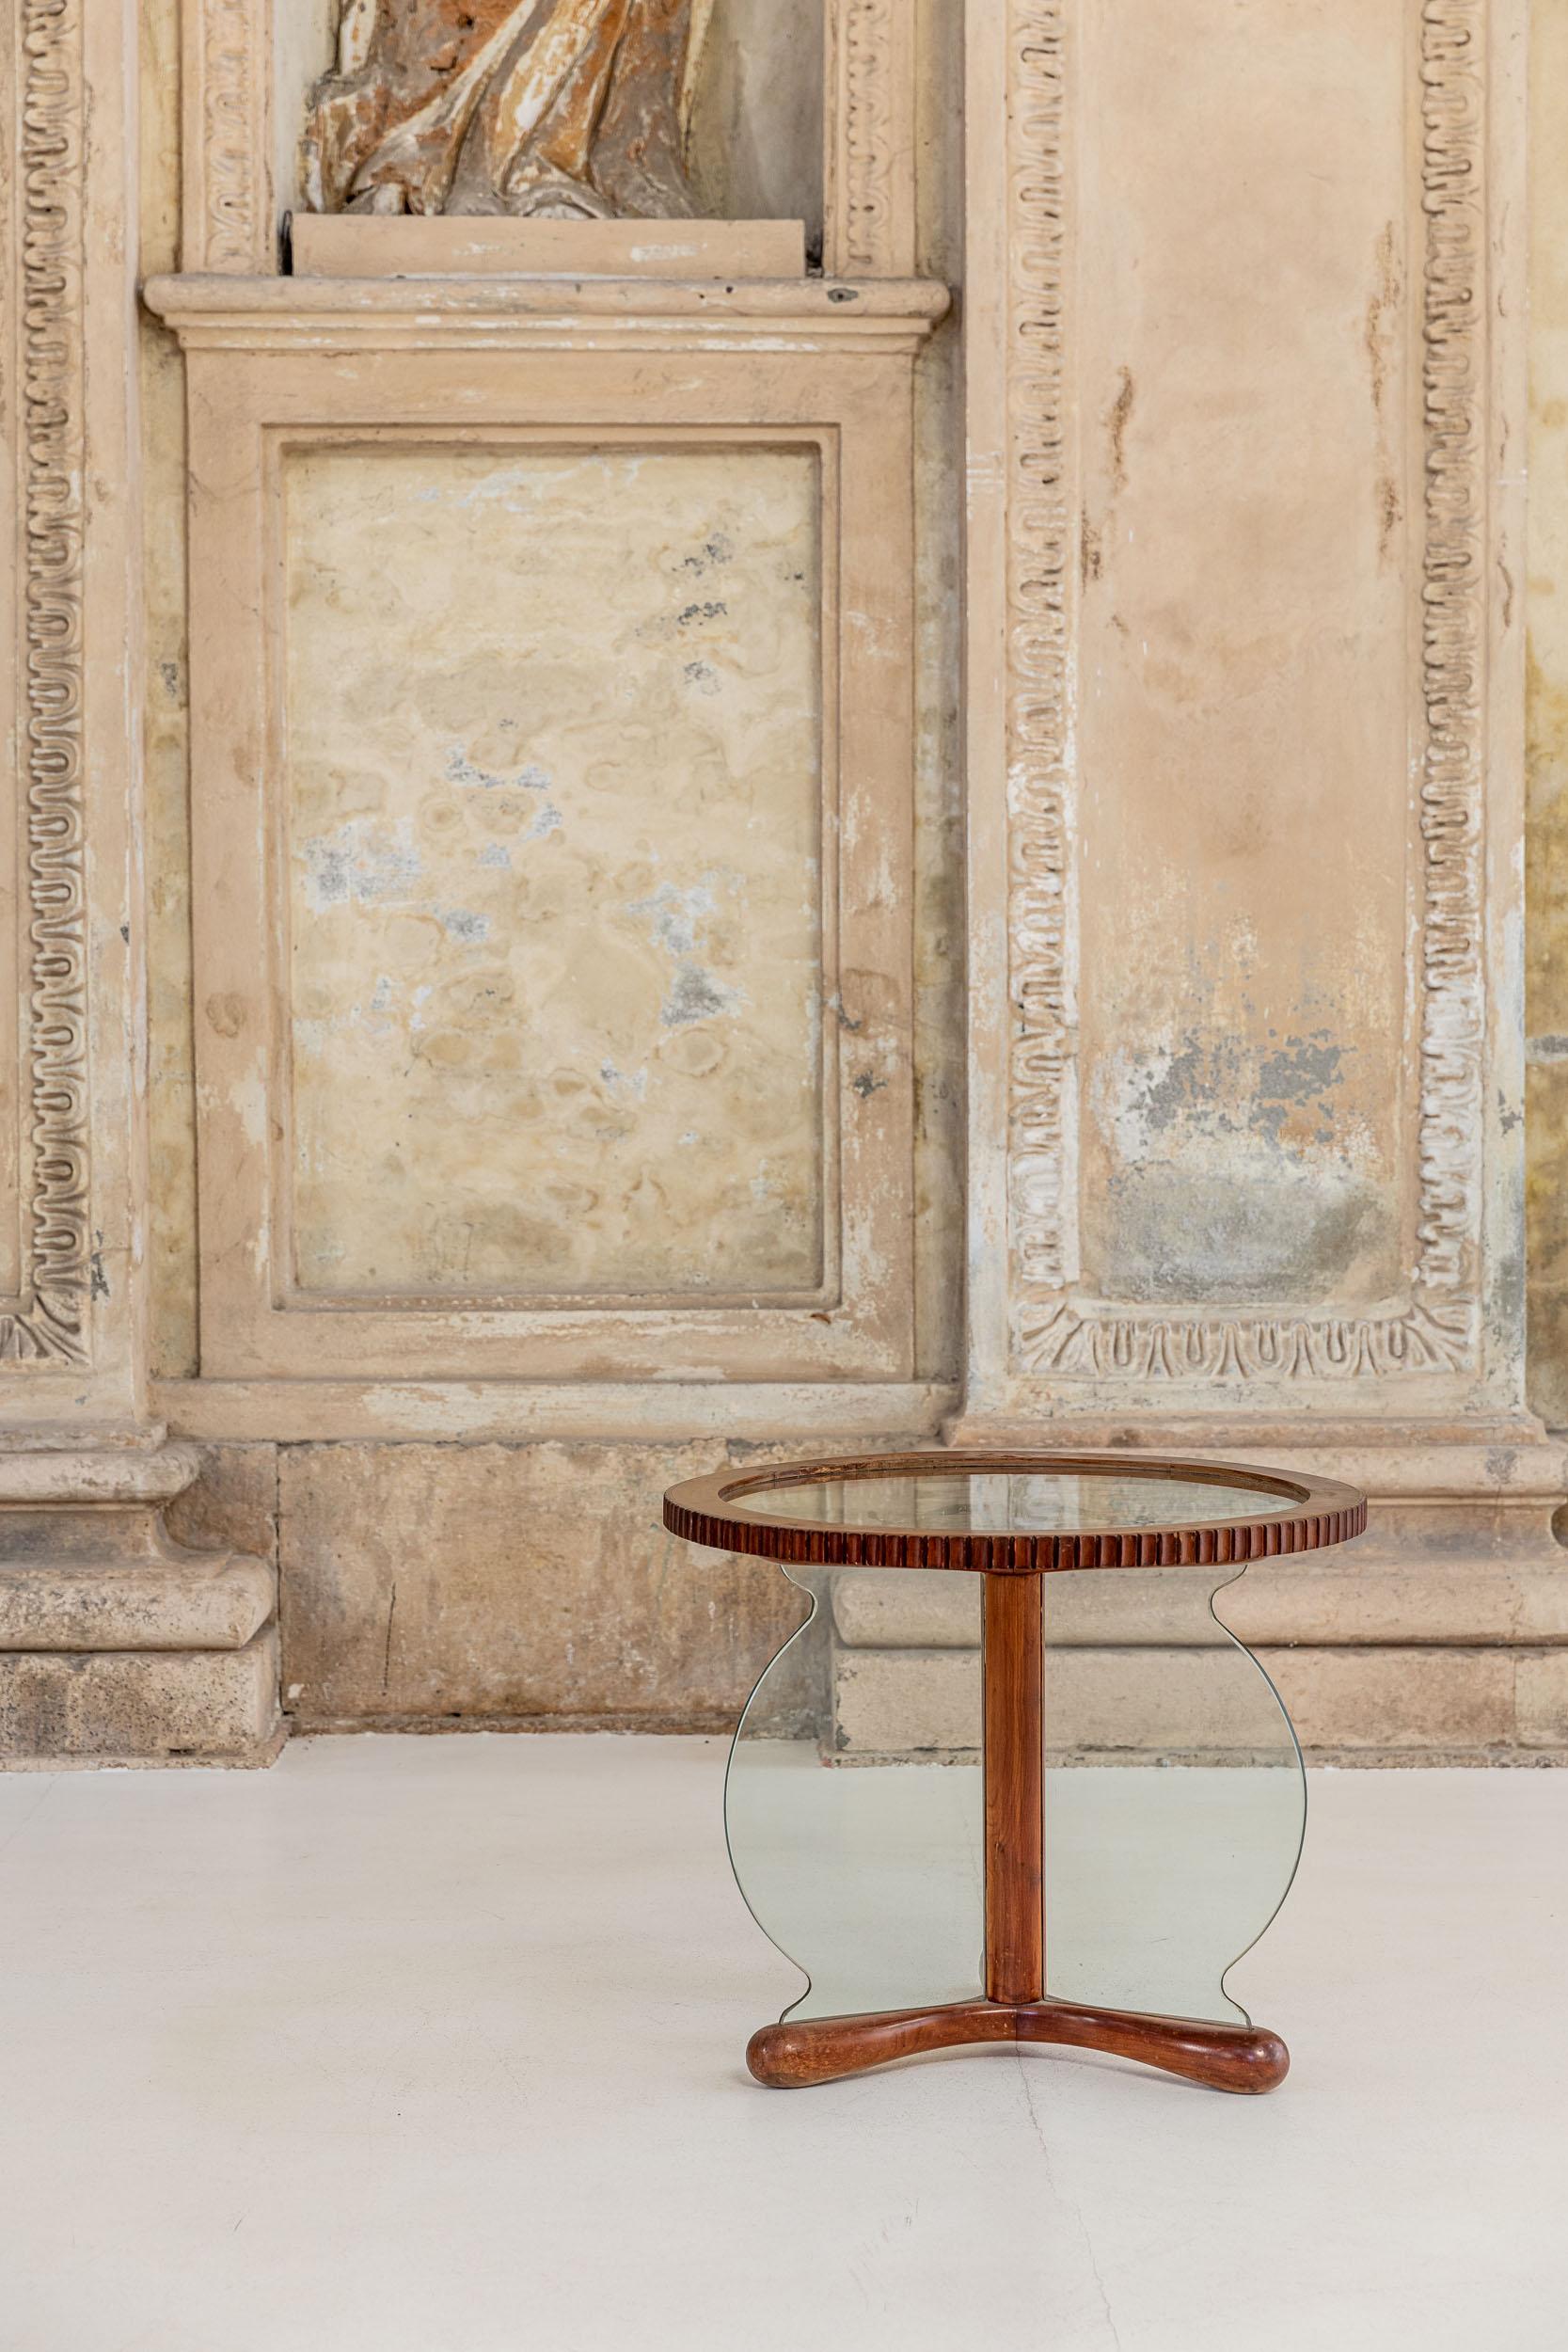 Table basse en bois et verre attribuée à Osvaldo Borsani. 
Elegant table basse avec une forme particulière composée d'un plateau circulaire et d'une base unique, tous réalisés en verre et bois finement décorés, la base a également un détail en